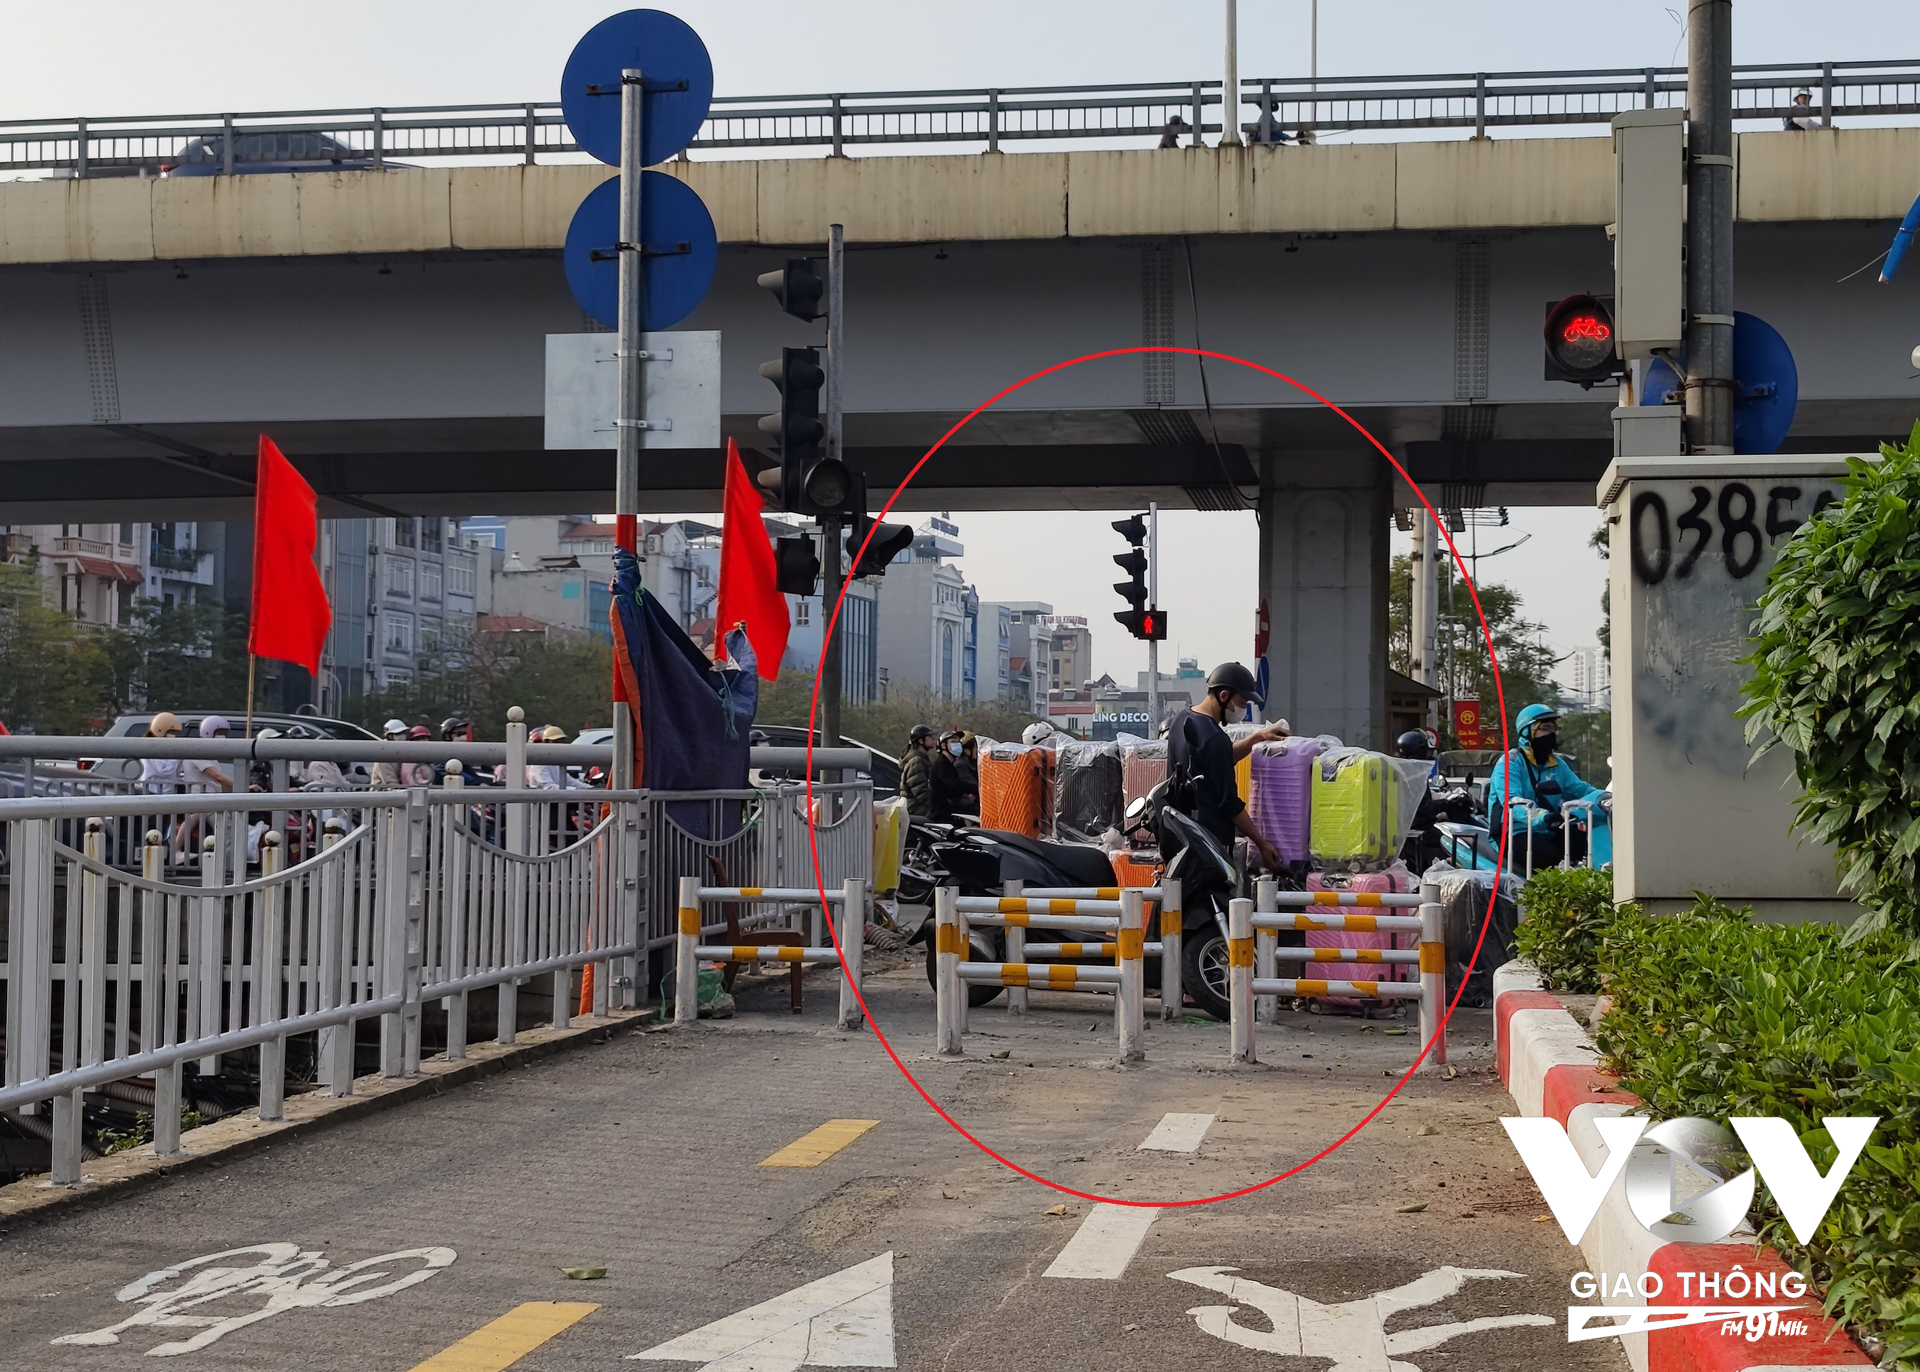 Đầu vào tuyến đường đạp xe từ phía Trần Duy Hưng hướng về cầu Hòa Mục bị bịt hoàn toàn bởi hàng chục chiếc vali bán dạo.